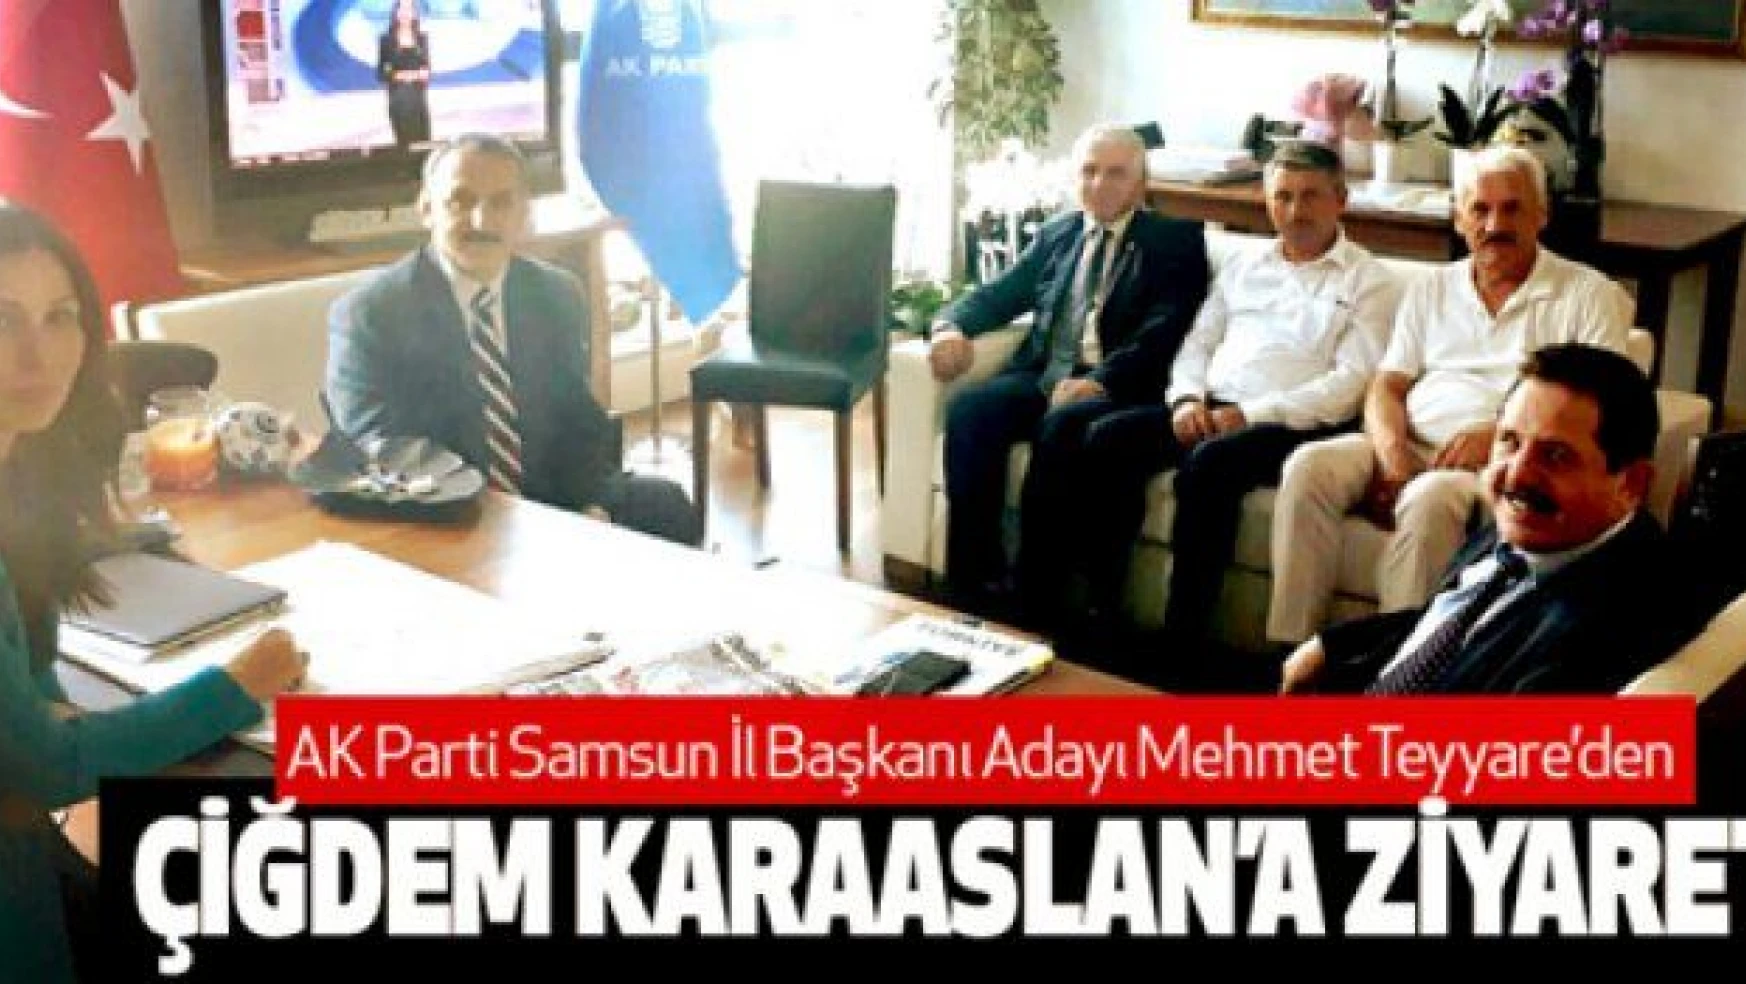 AK Parti Samsun İl Başkanı Adayı Mehmet Teyyare'den Karaaslan'a ziyaret!